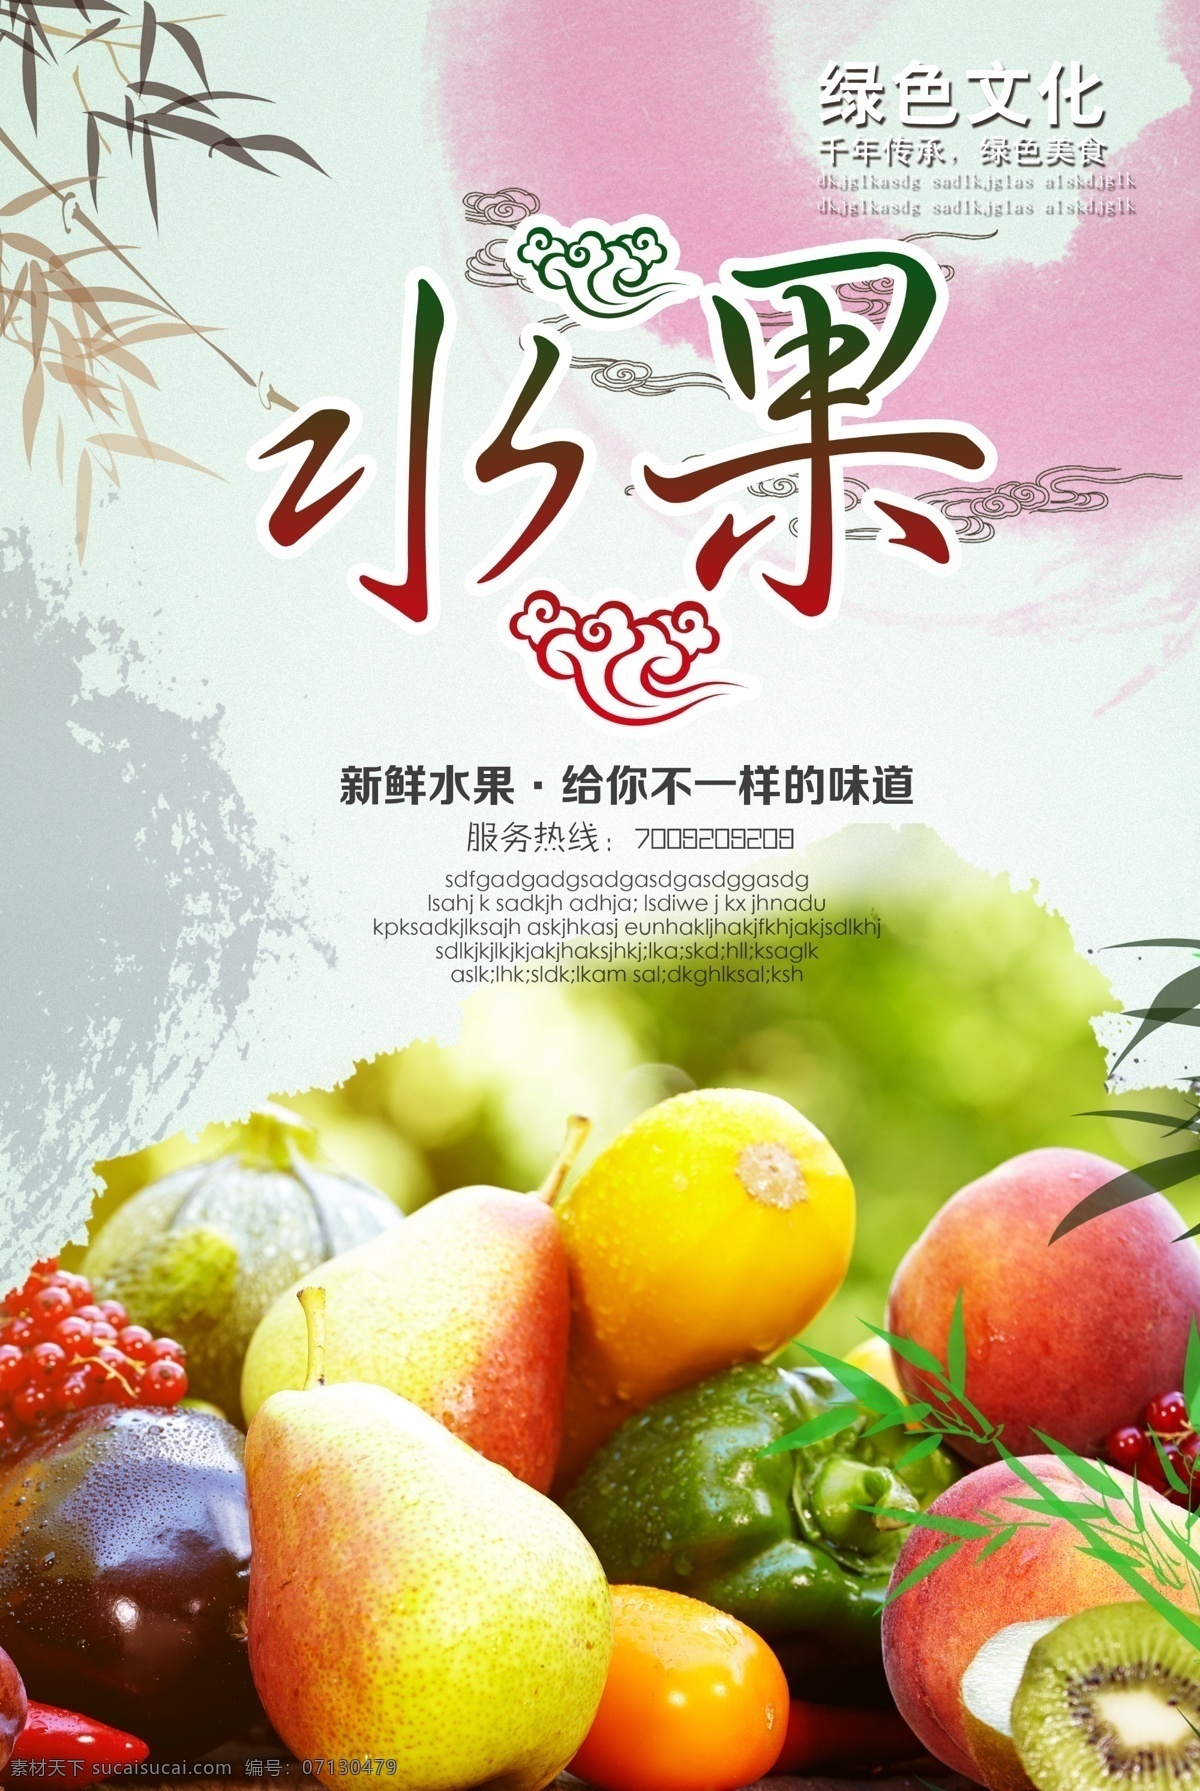 水果展板海报 水果展板 海报 水果果蔬 创意水果 水果背景